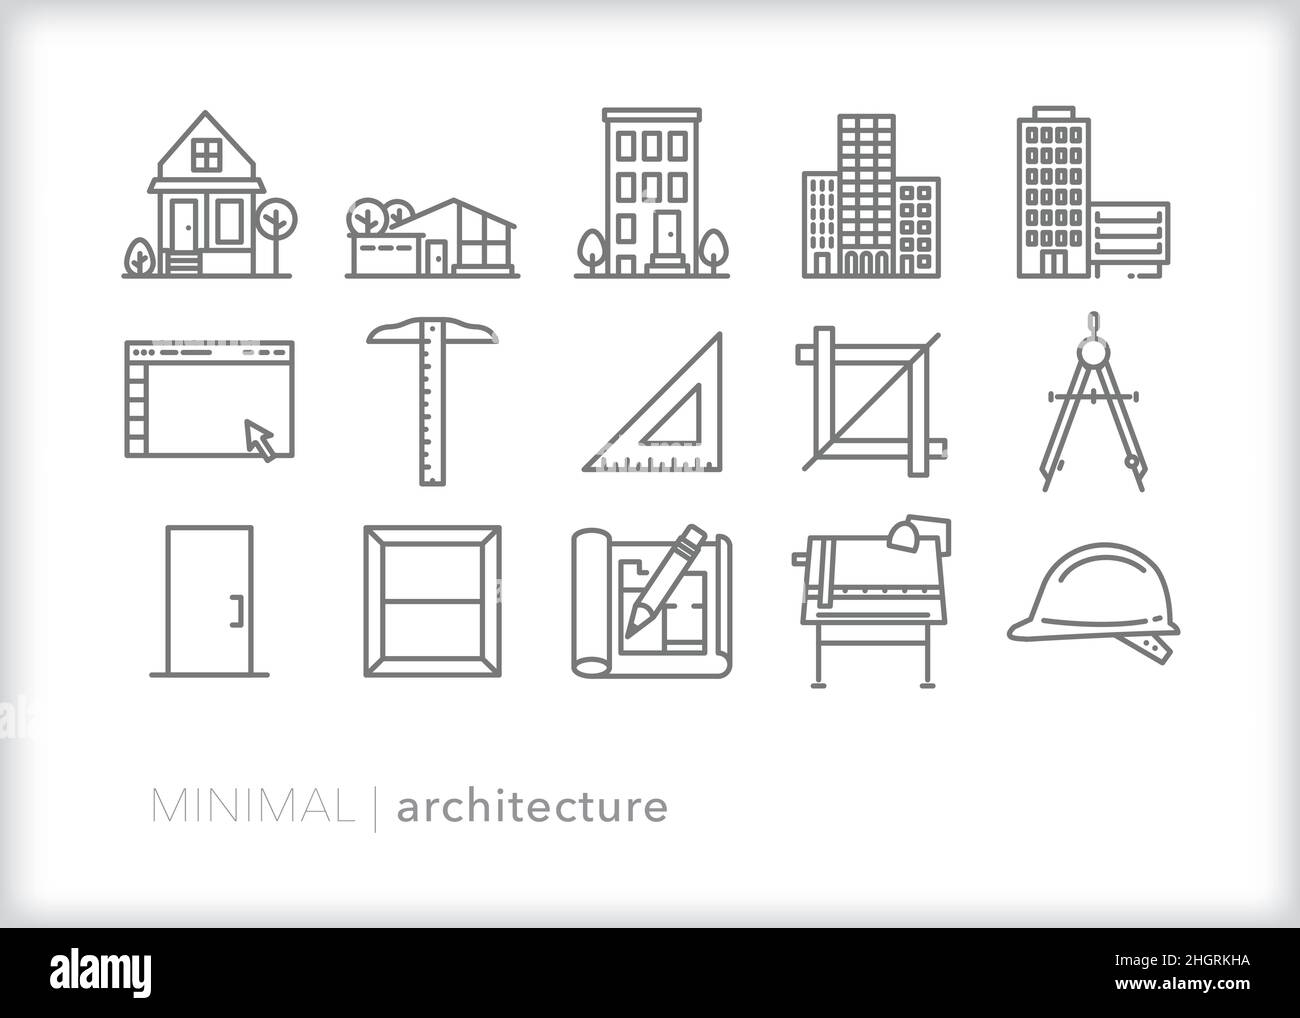 Ensemble d'icônes d'architecture des outils qu'un architecte utilise pour planifier, créer et construire des maisons et d'autres bâtiments Illustration de Vecteur